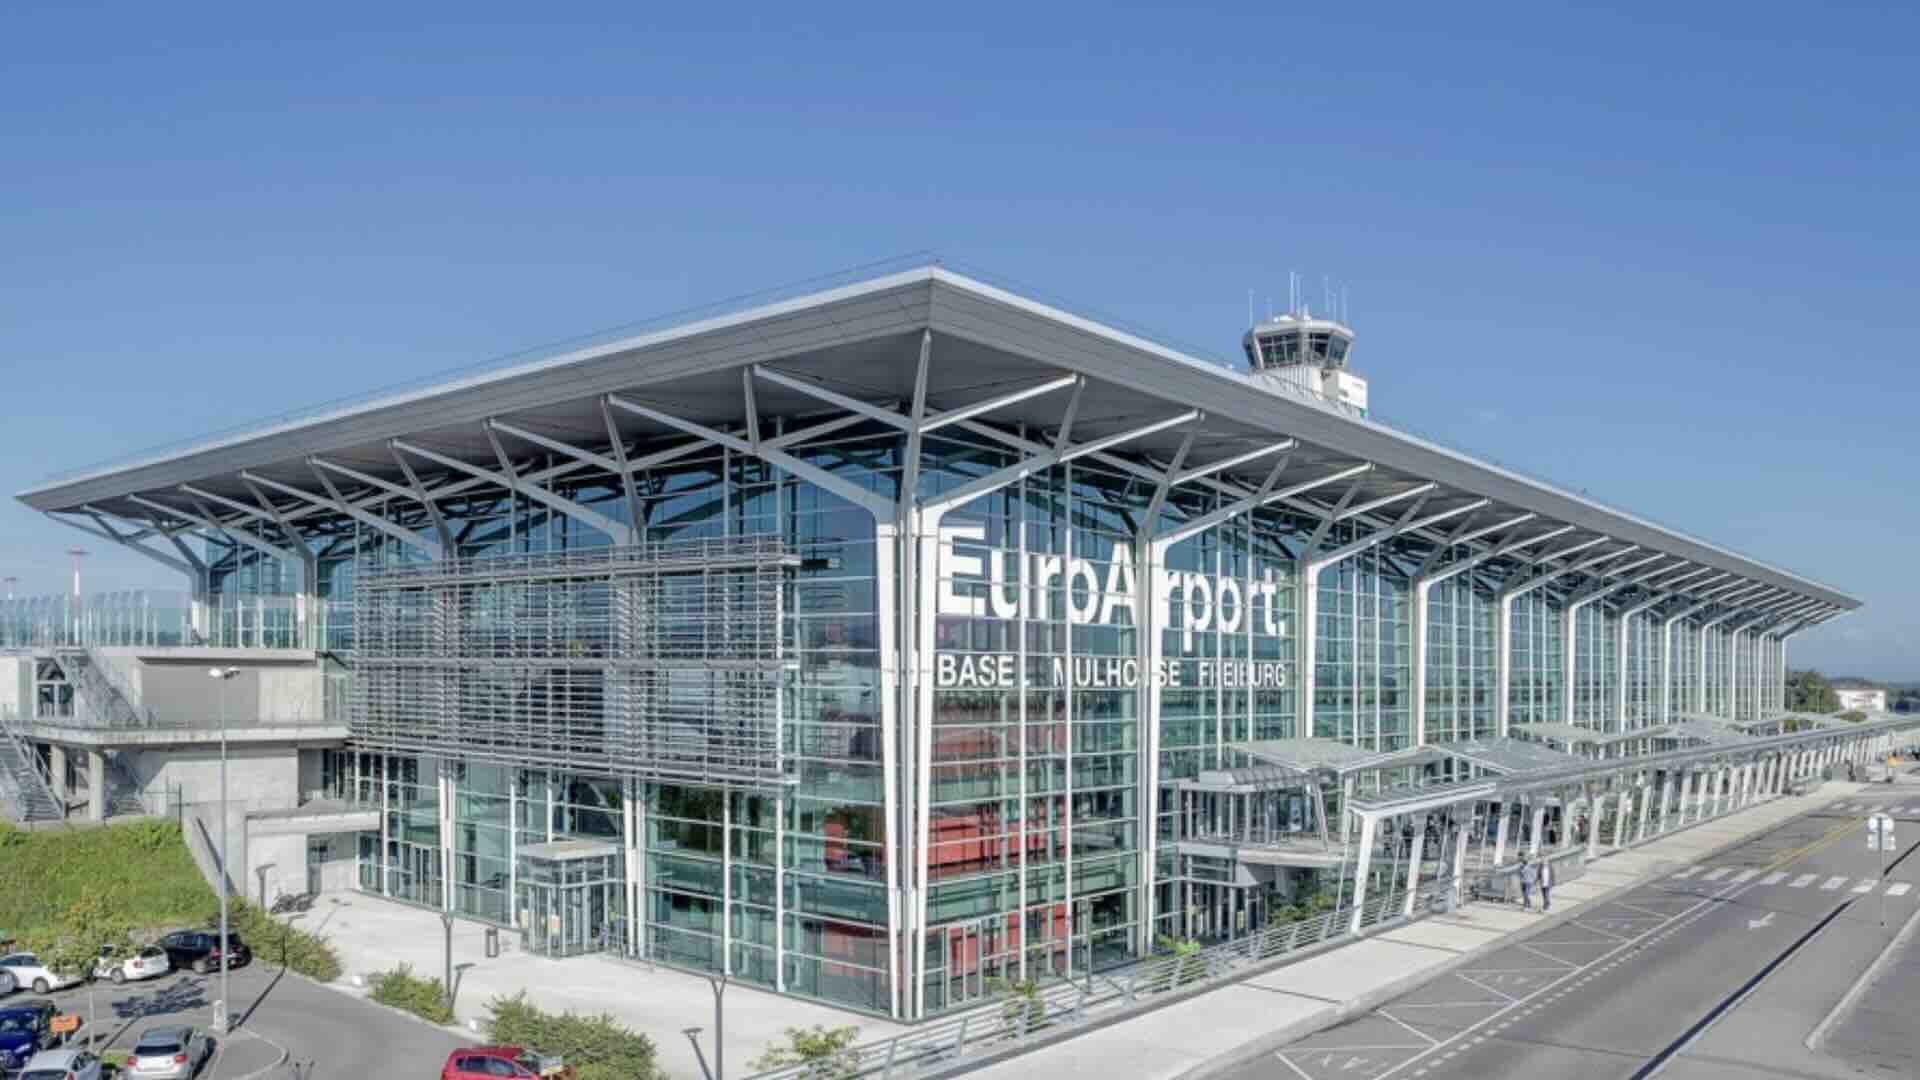 Aeroporto di Basilea chiuso e riaperto per motivi di sicurezza